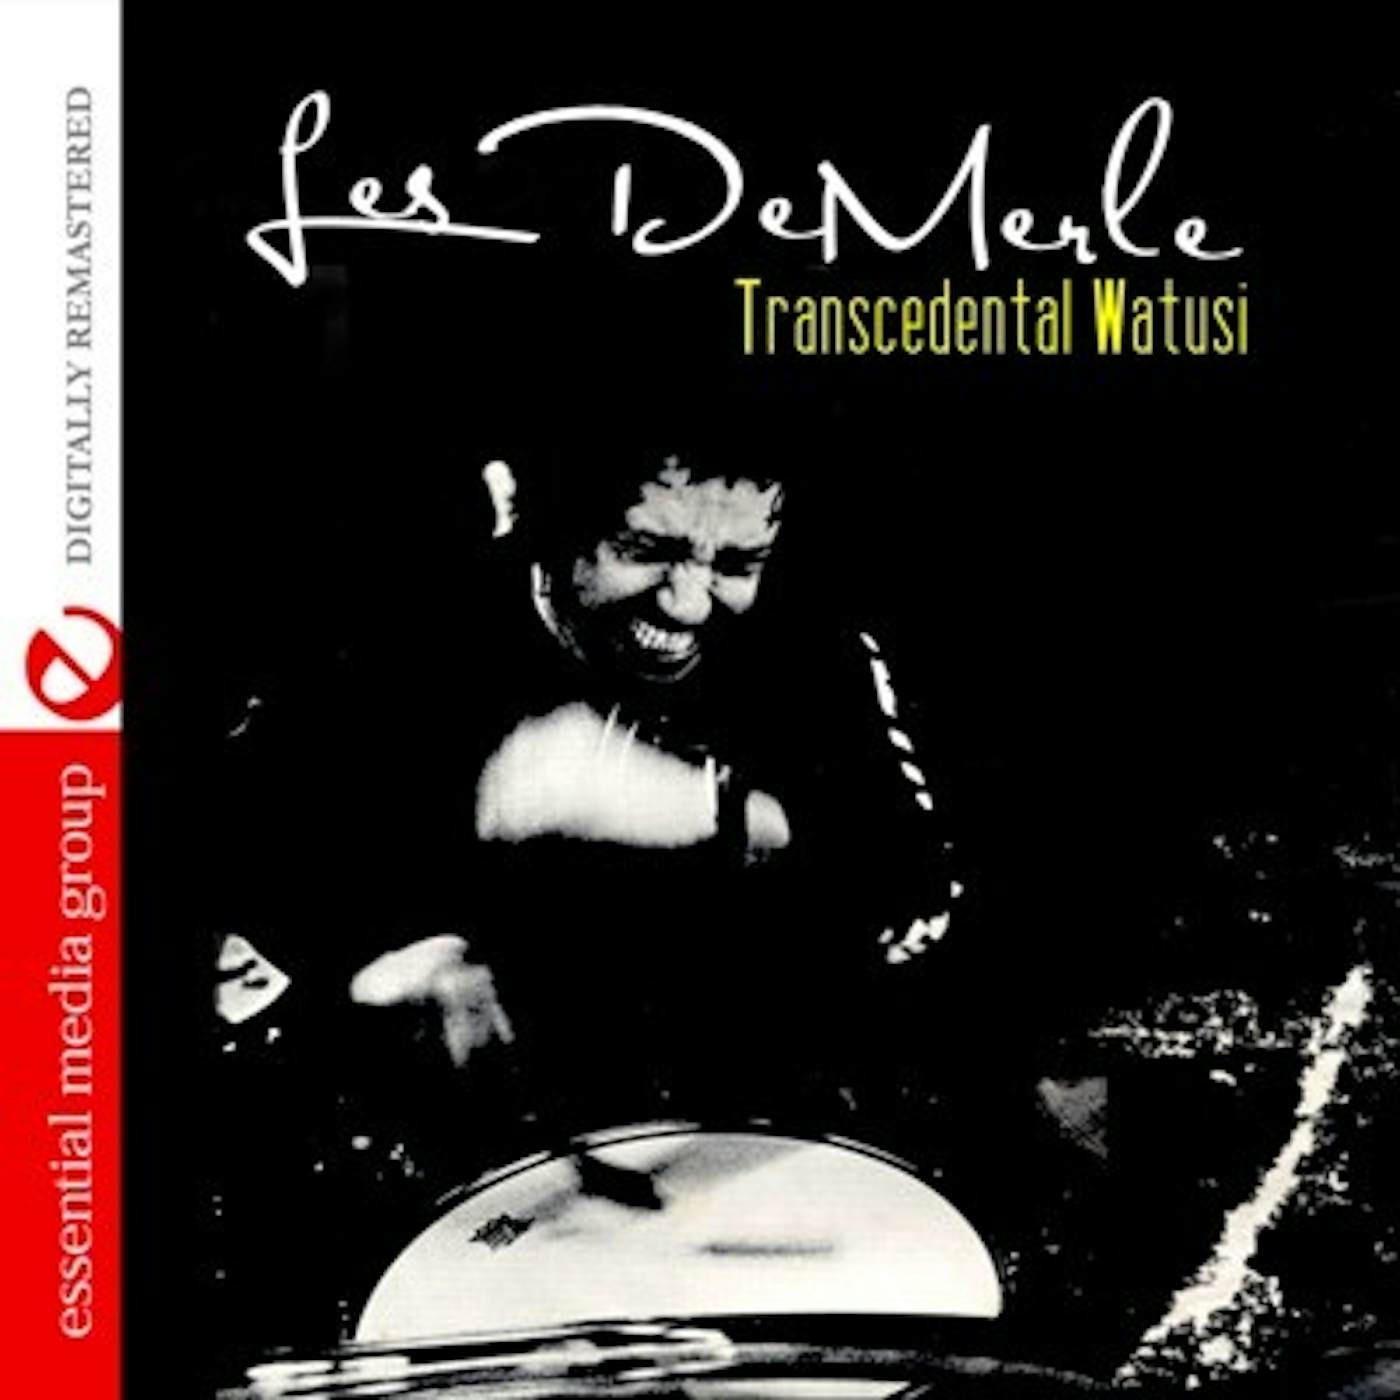 Les DeMerle TRANSCEDENTAL WATUSI CD